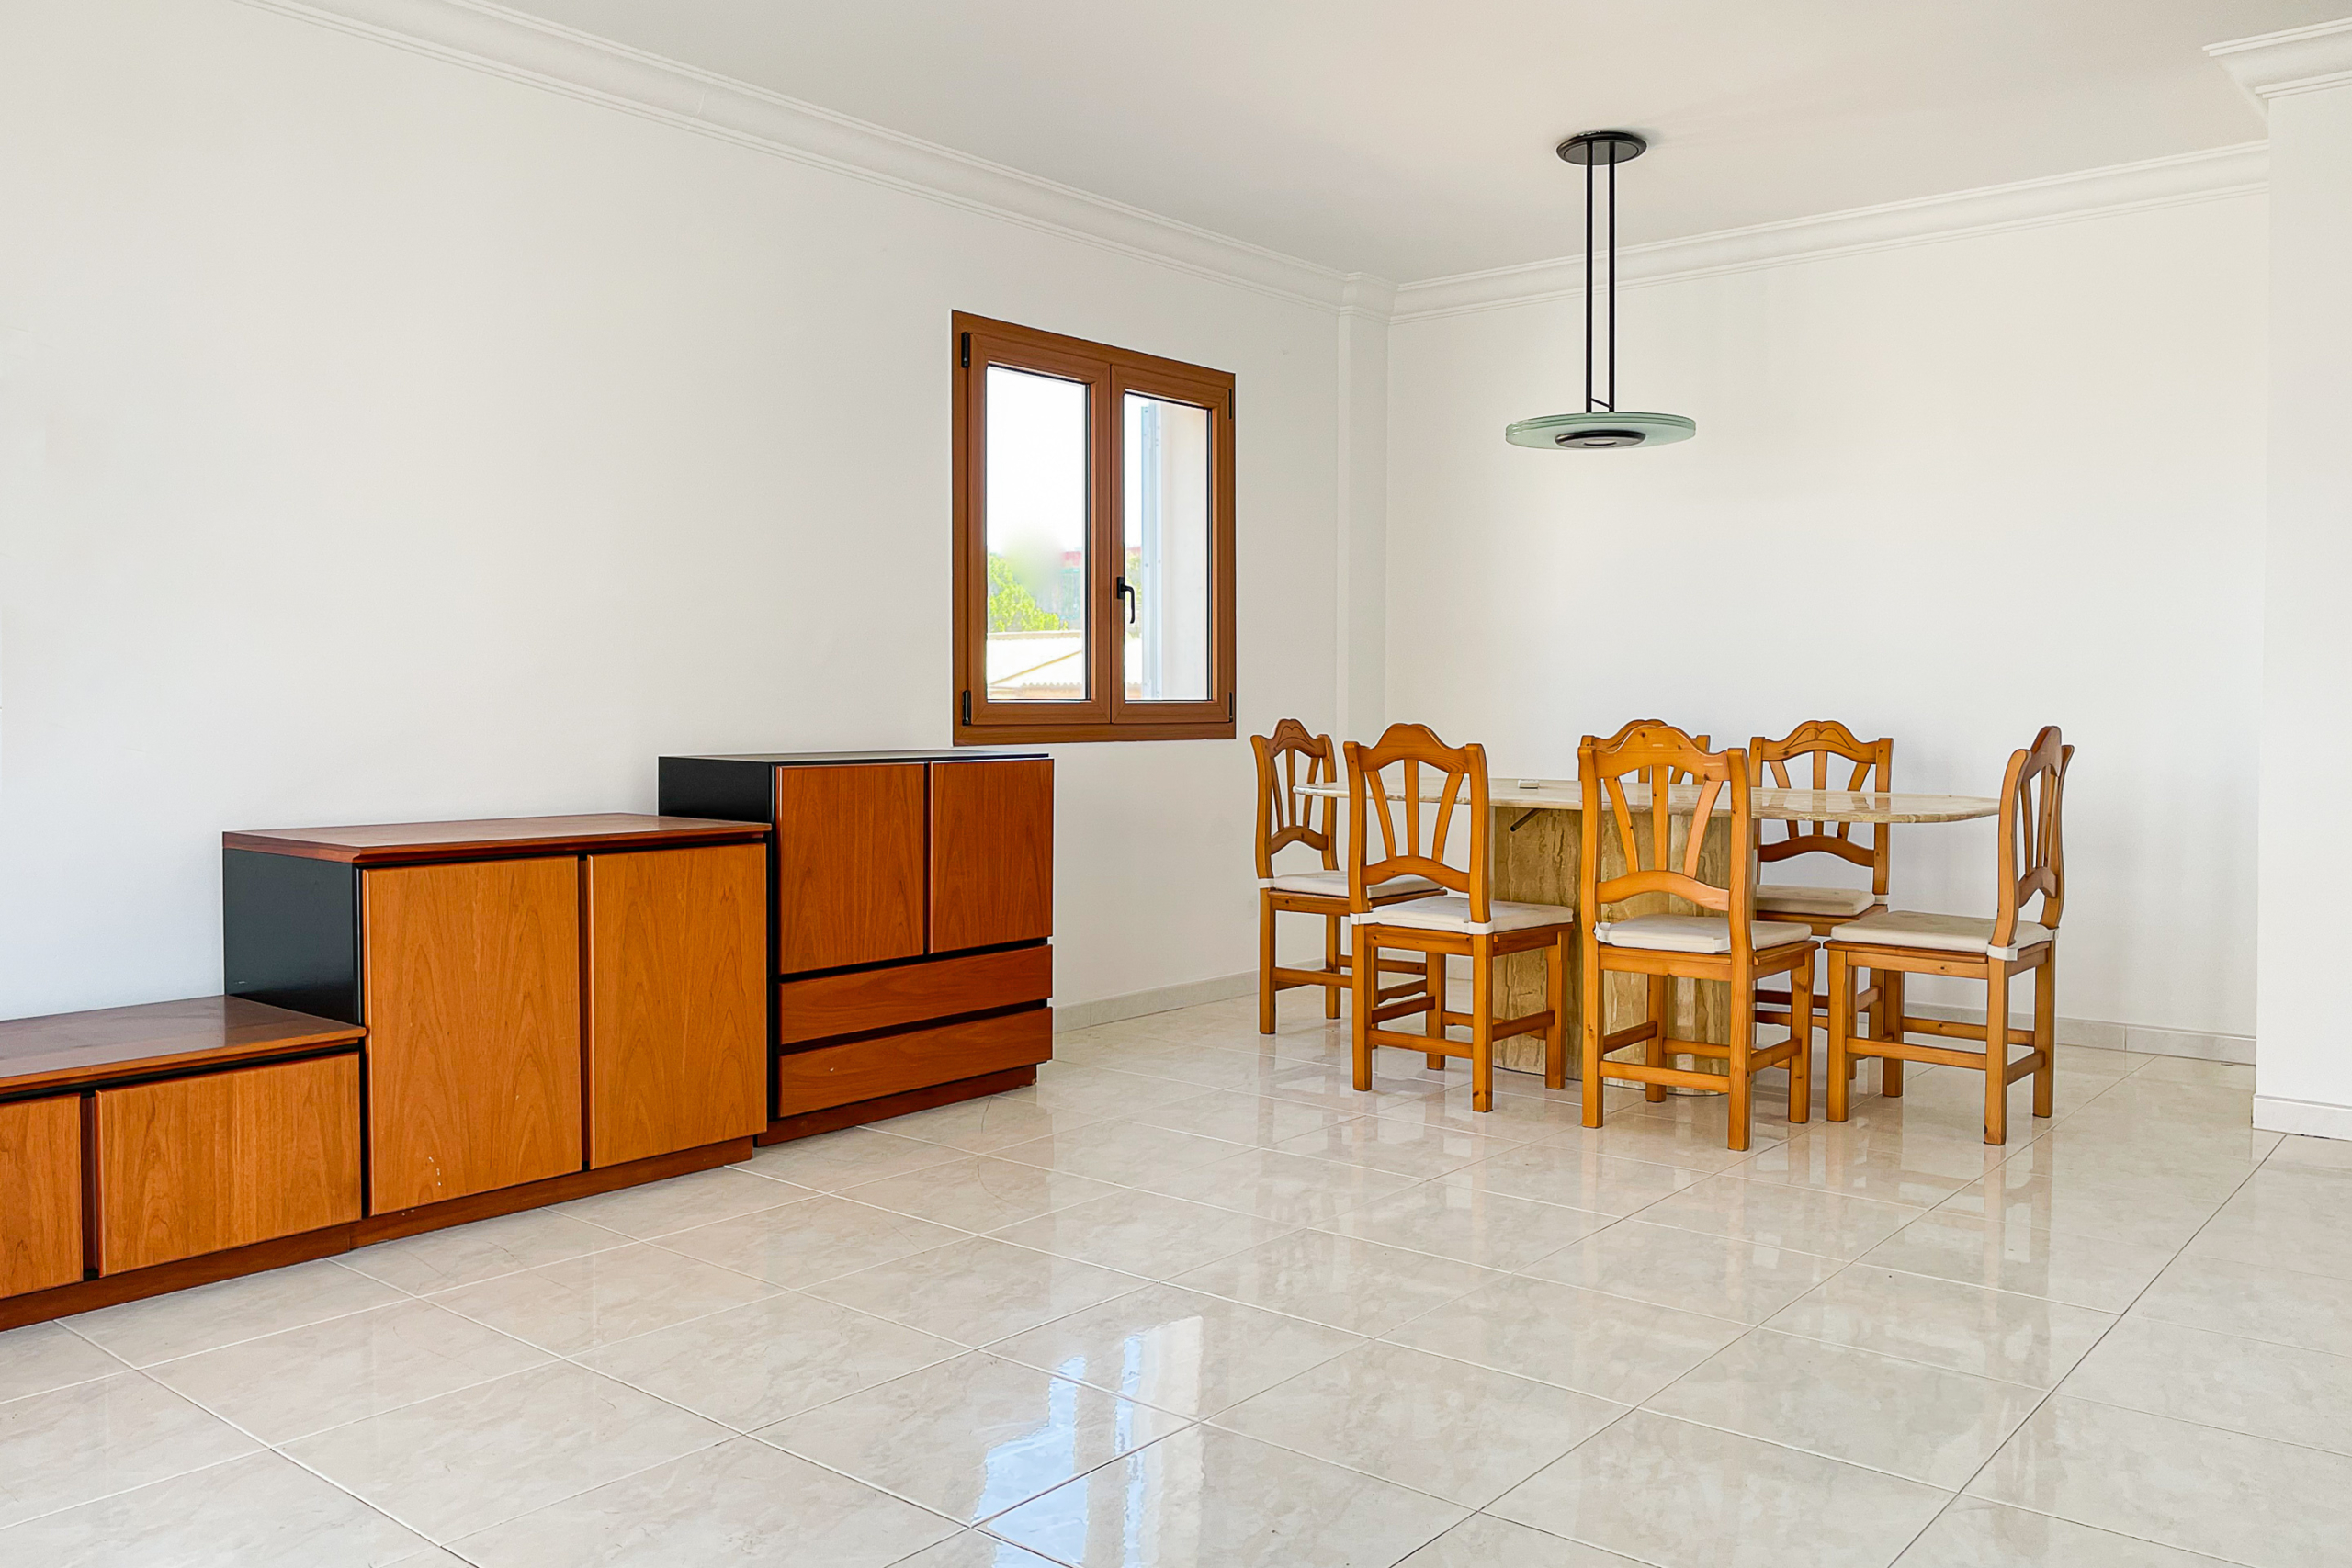 Amplio piso en zona tranquila con 3 dormitorios y balcón con vistas lejanas, 07590 Cala Ratjada (España), Piso en planta